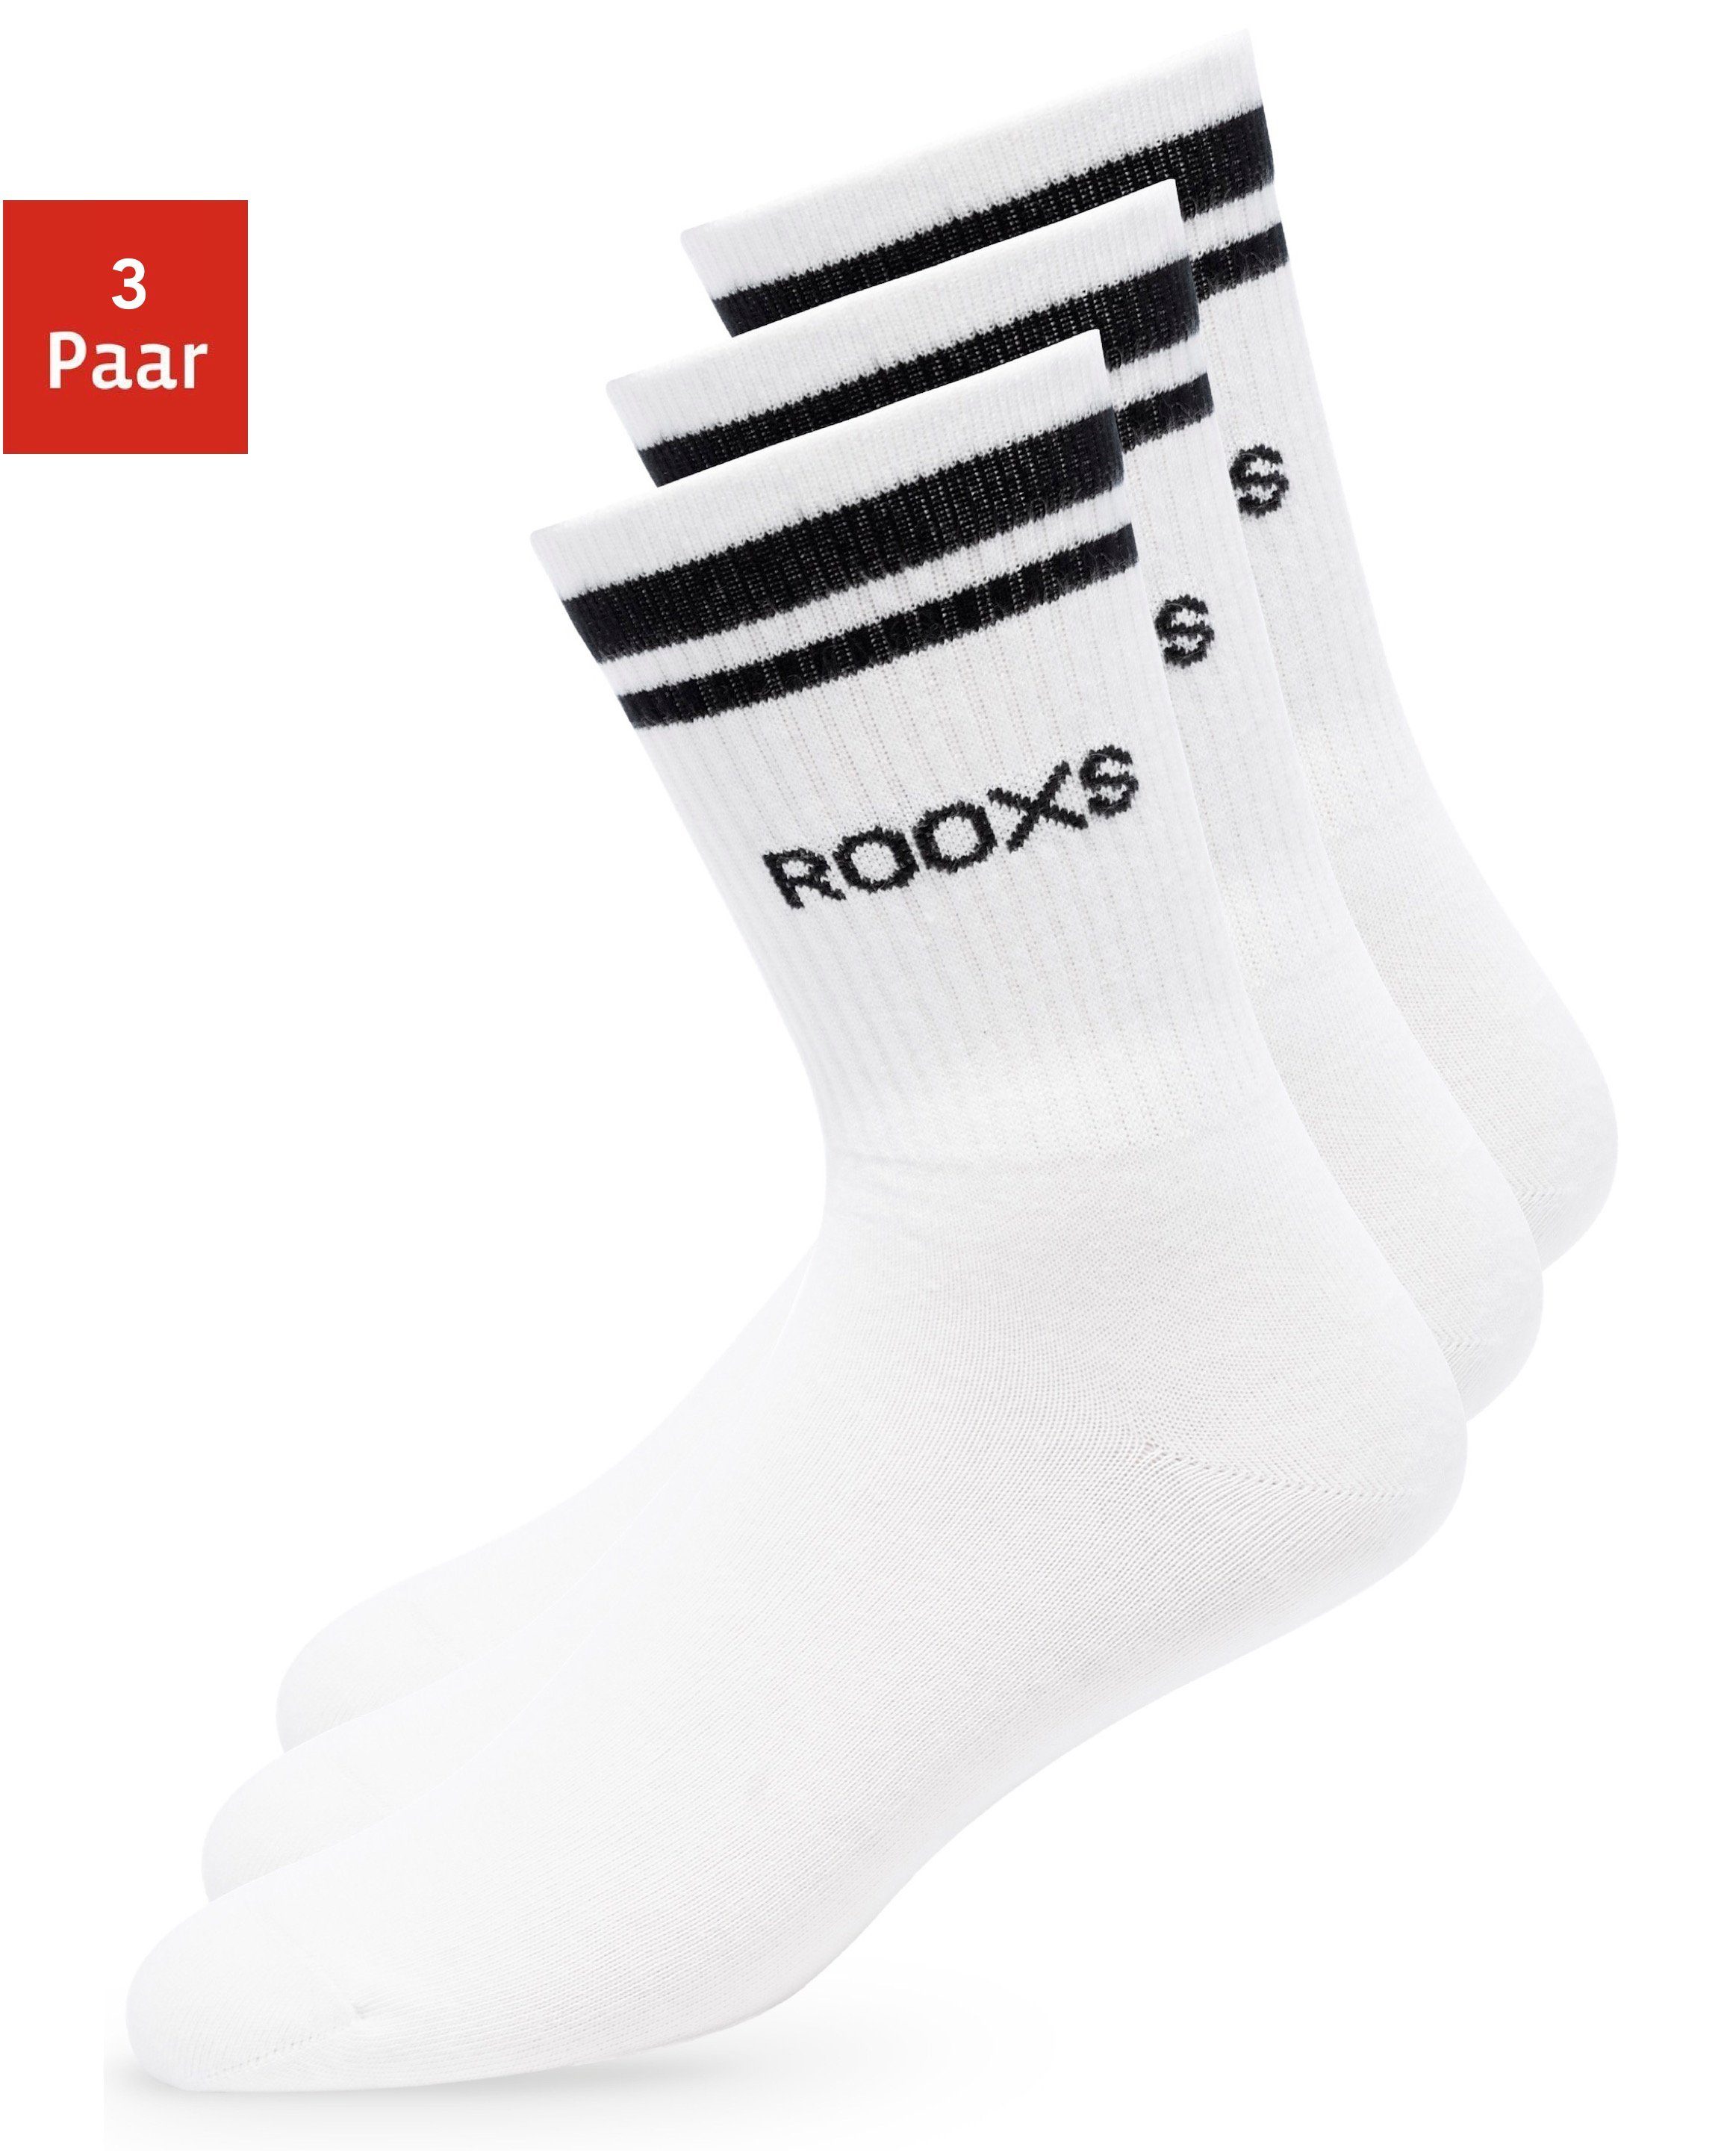 ROOXS Sportsocken Hohe Tennissocken für Damen & Herren (3-Paar) Retro Socken mit streifen, Made in EU 02 Weiß